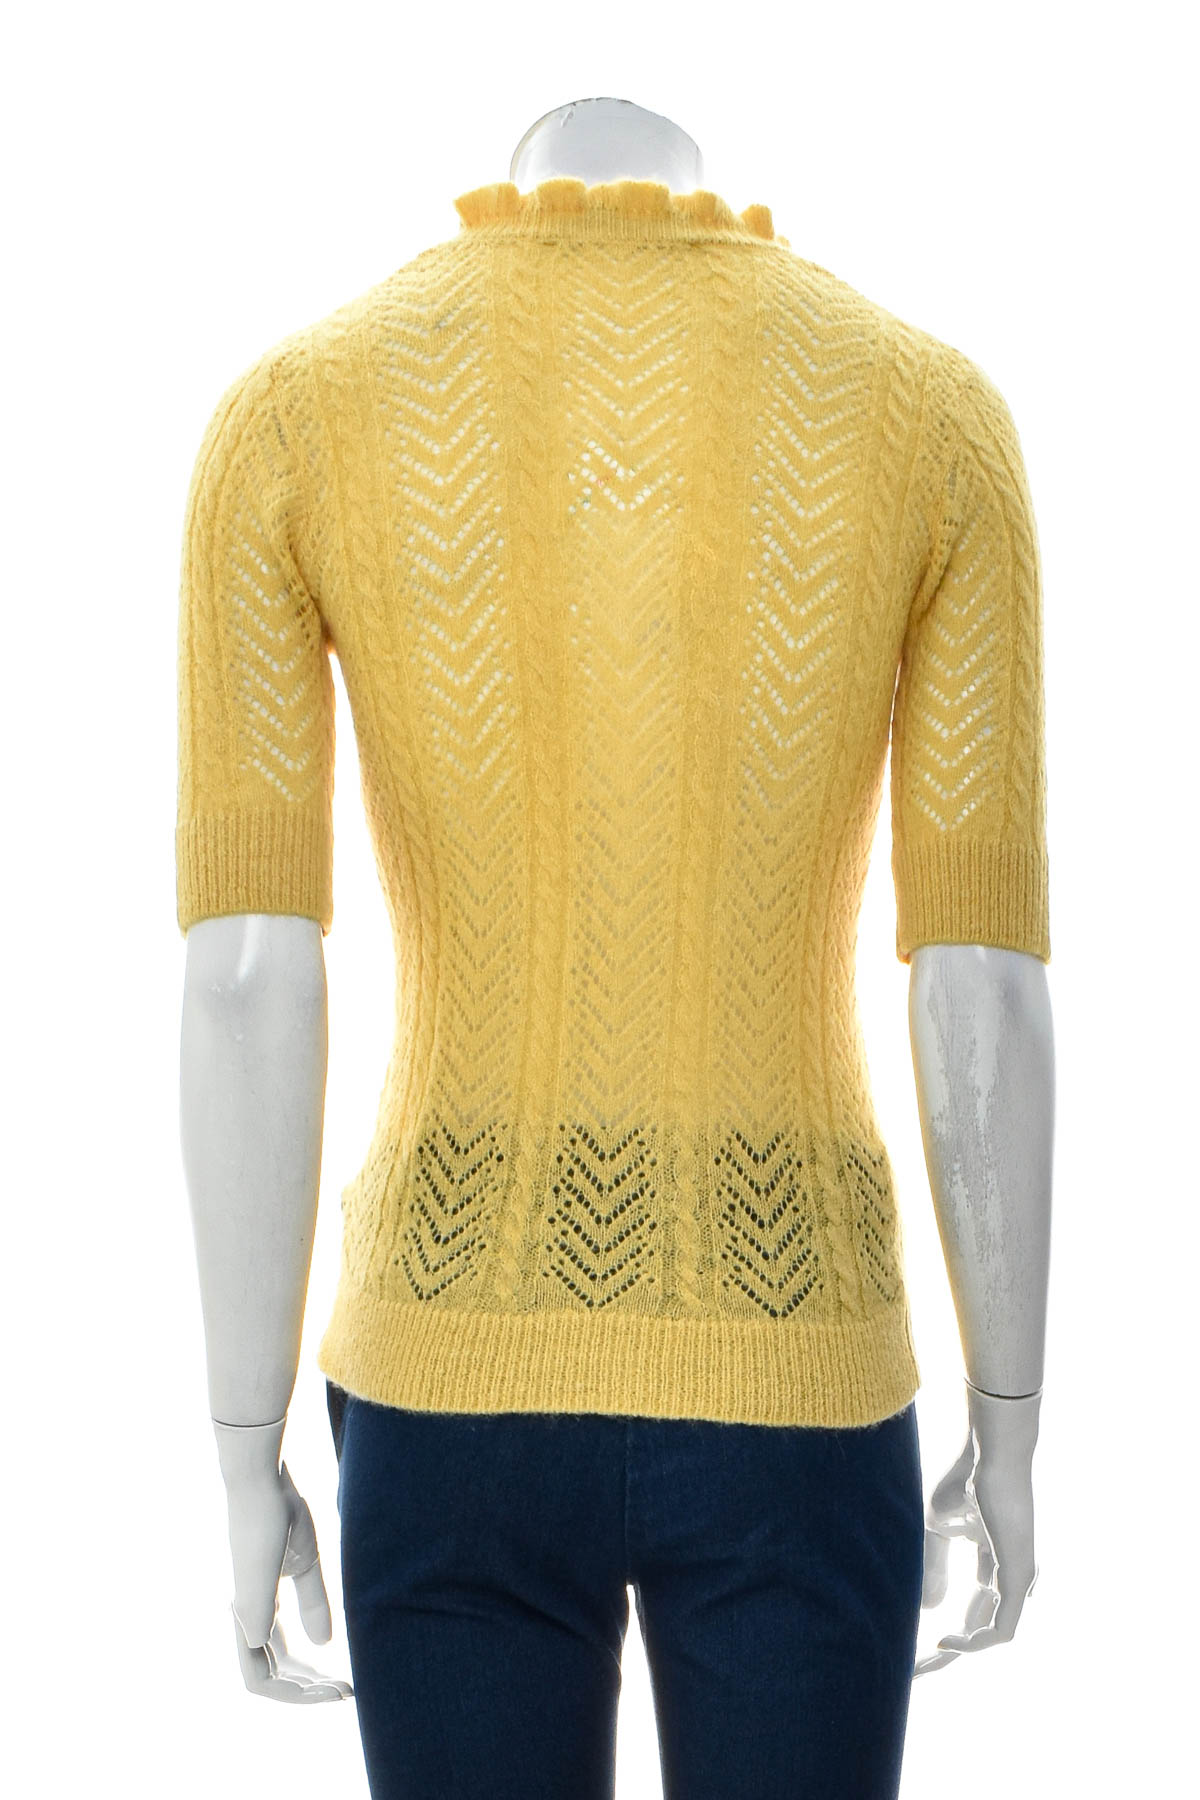 Women's sweater - HALLHUBER DONNA - 1